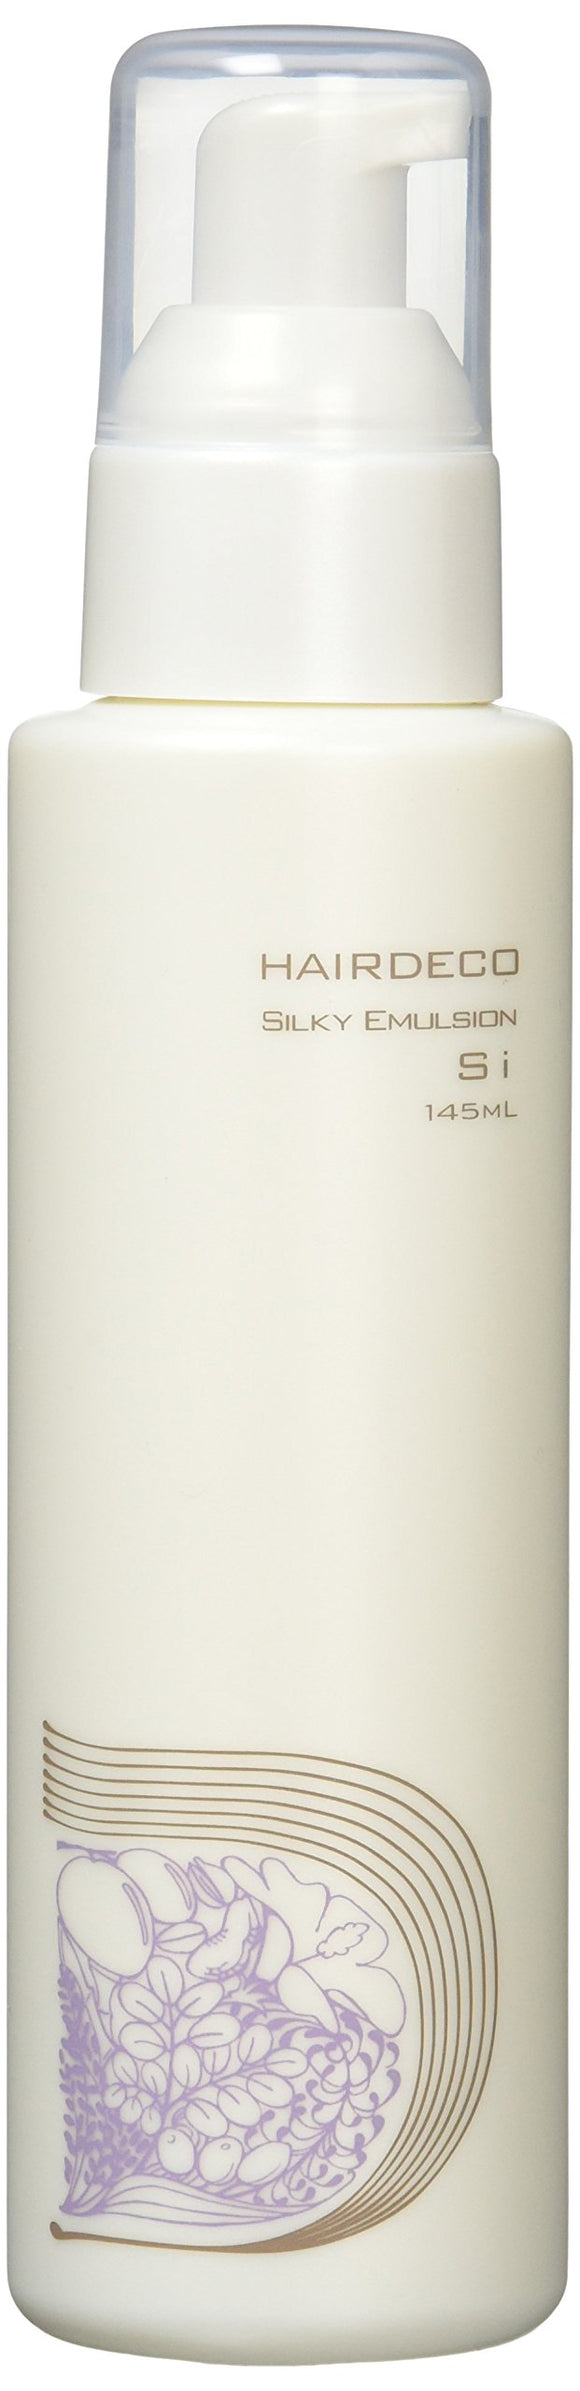 Adjuvant Cosme Japan Co., Ltd. Adjuvant Hair Deco Silky Emulsion si moist type 145ml